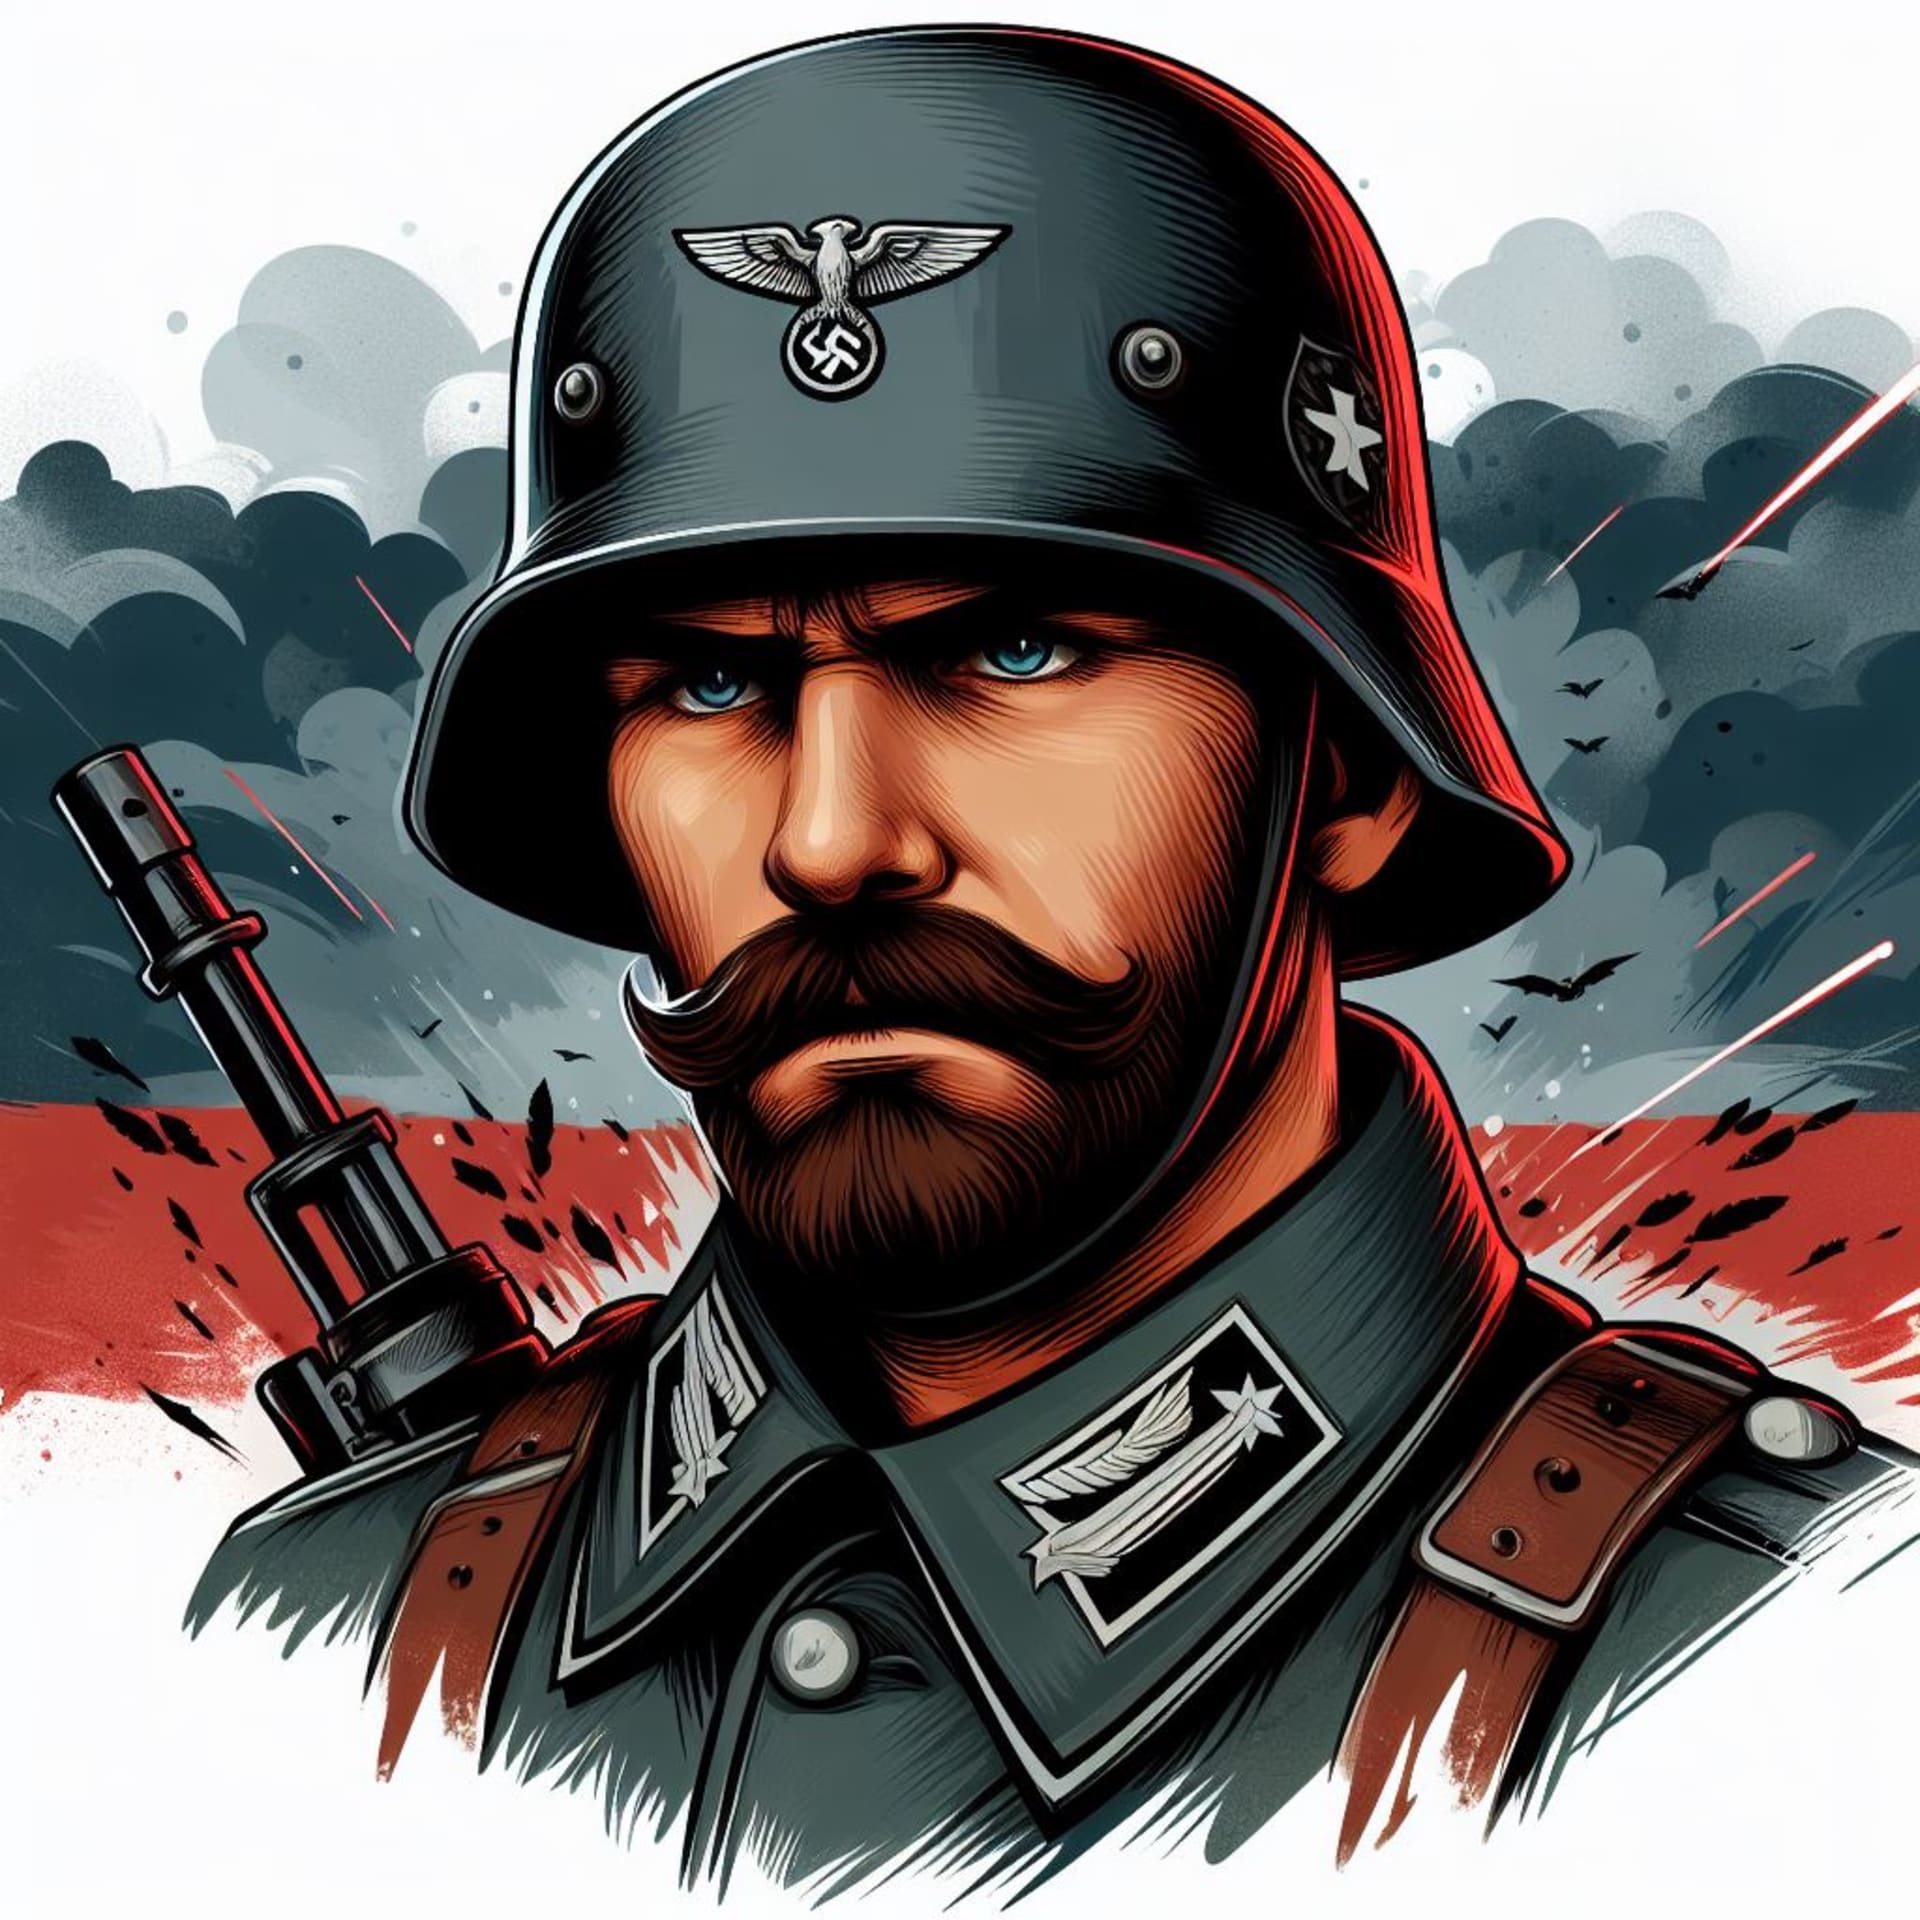 Obrázek od Microsoft Designer na zadání: německý voják, ilustrace.